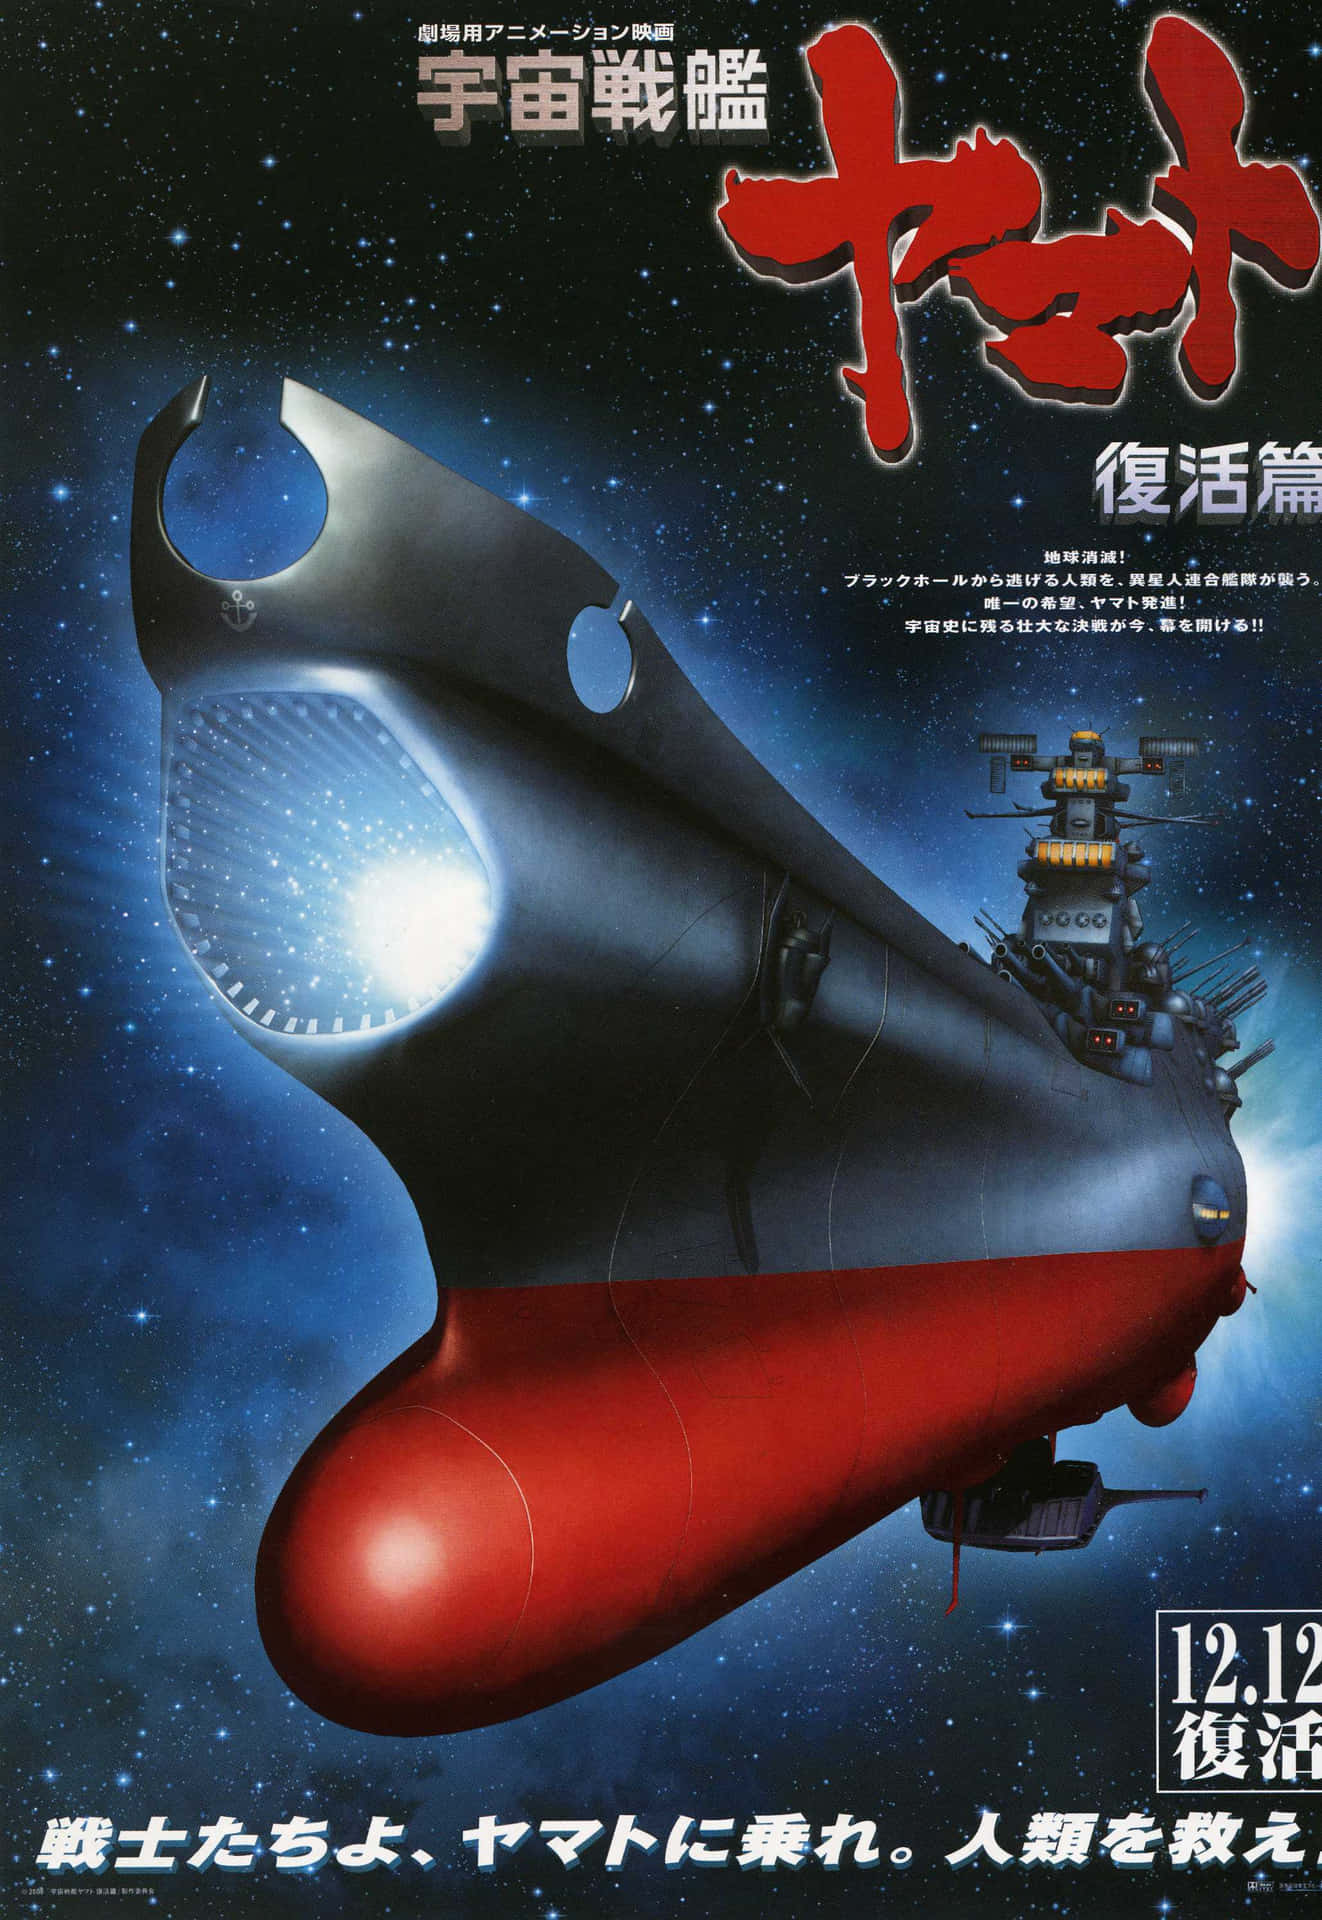 Valientetripulación Del Acorazado Espacial Yamato Abraza Su Misión. Fondo de pantalla